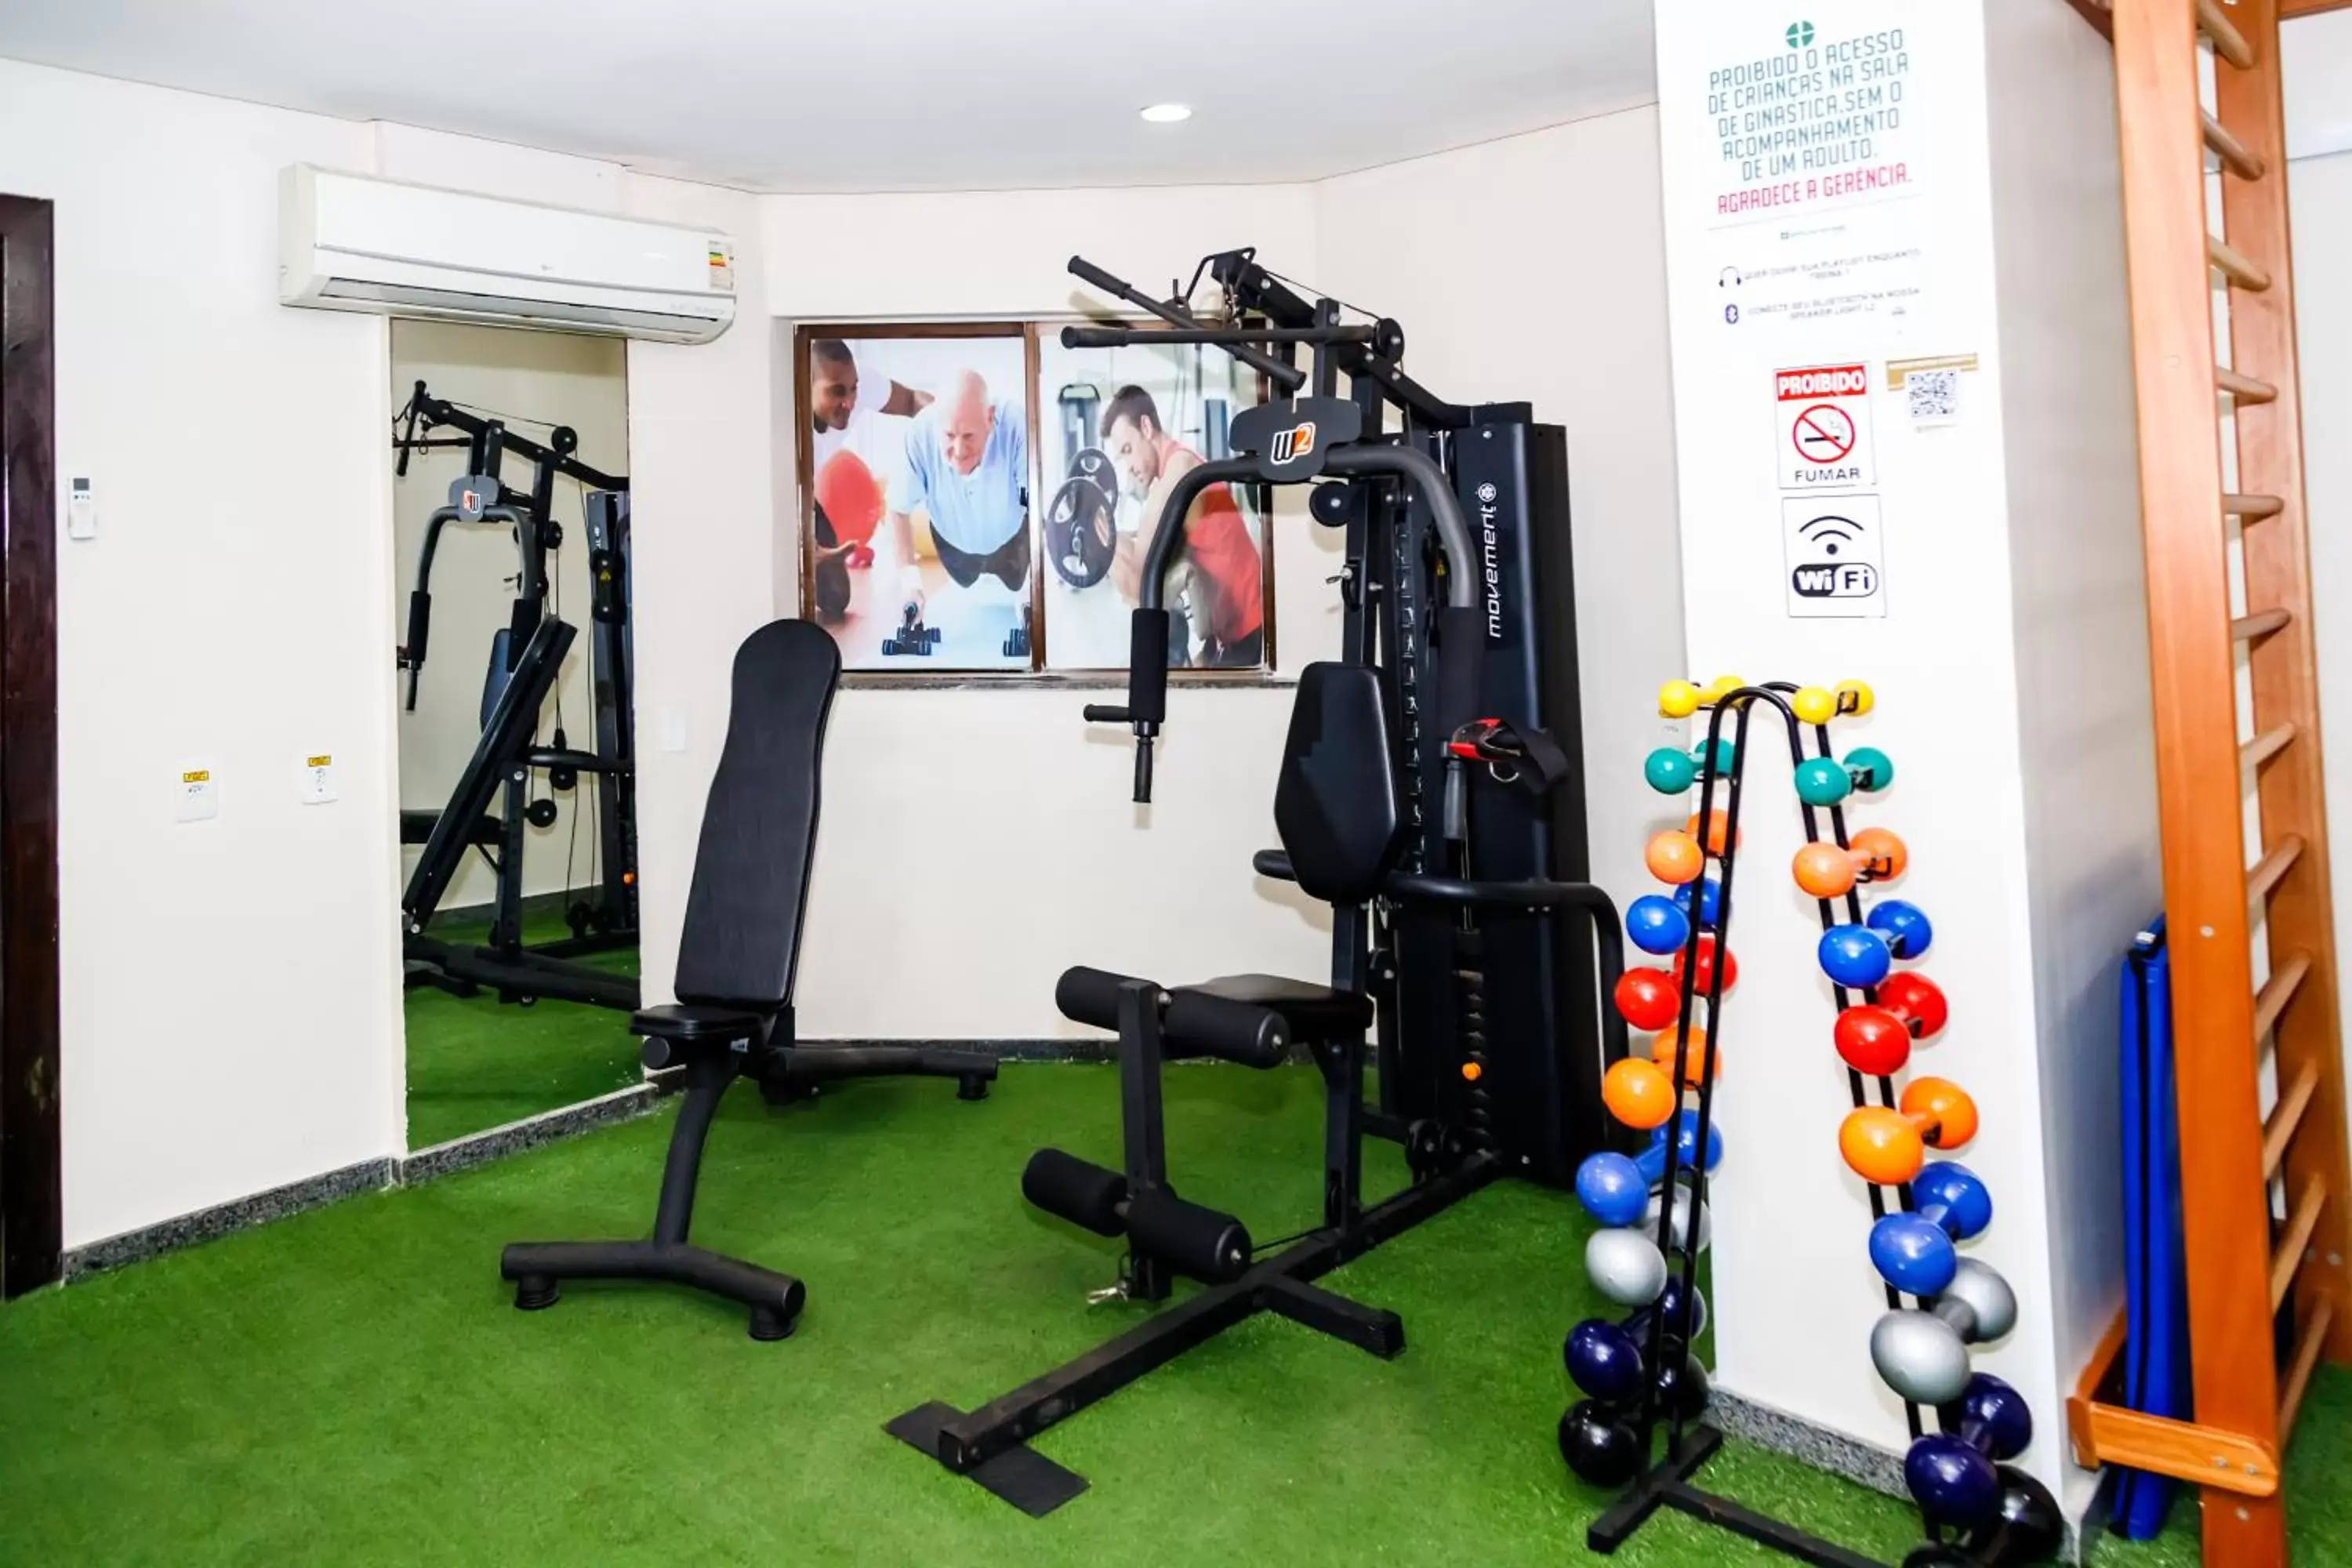 Fitness centre/facilities, Fitness Center/Facilities in Golden Park Recife Boa Viagem